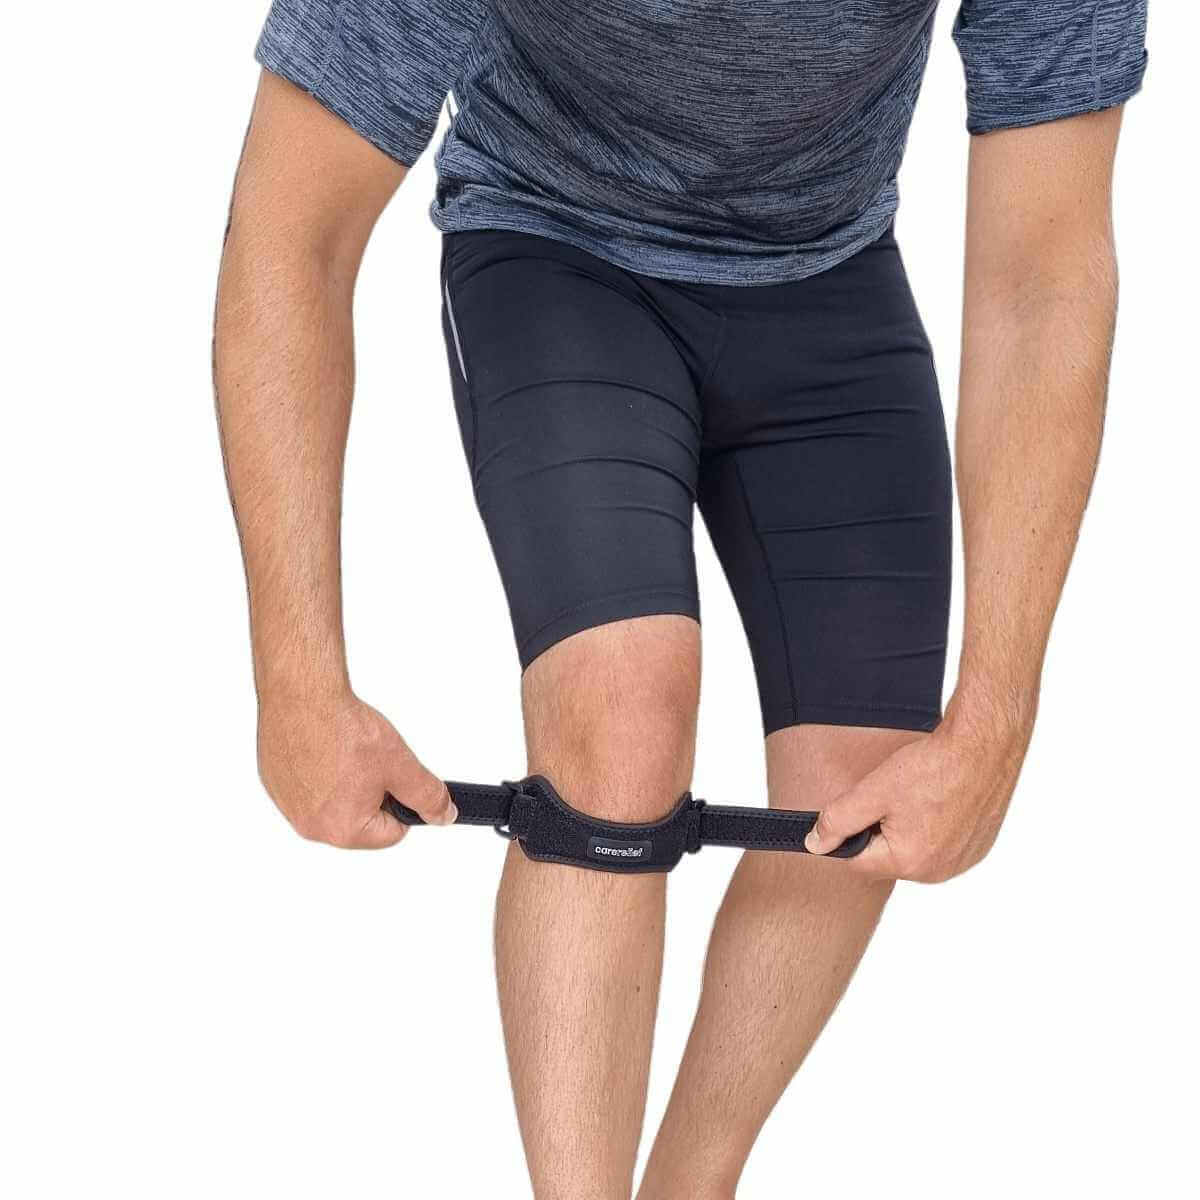 Køb knæstrop til Springerknæ, Schlatter og Løberknæ, one-size, sort. Anatomisk og justérbart knæbind KN40 designet til at aflaste knæet ved smerter efter overbelastning, skader og ved sport.